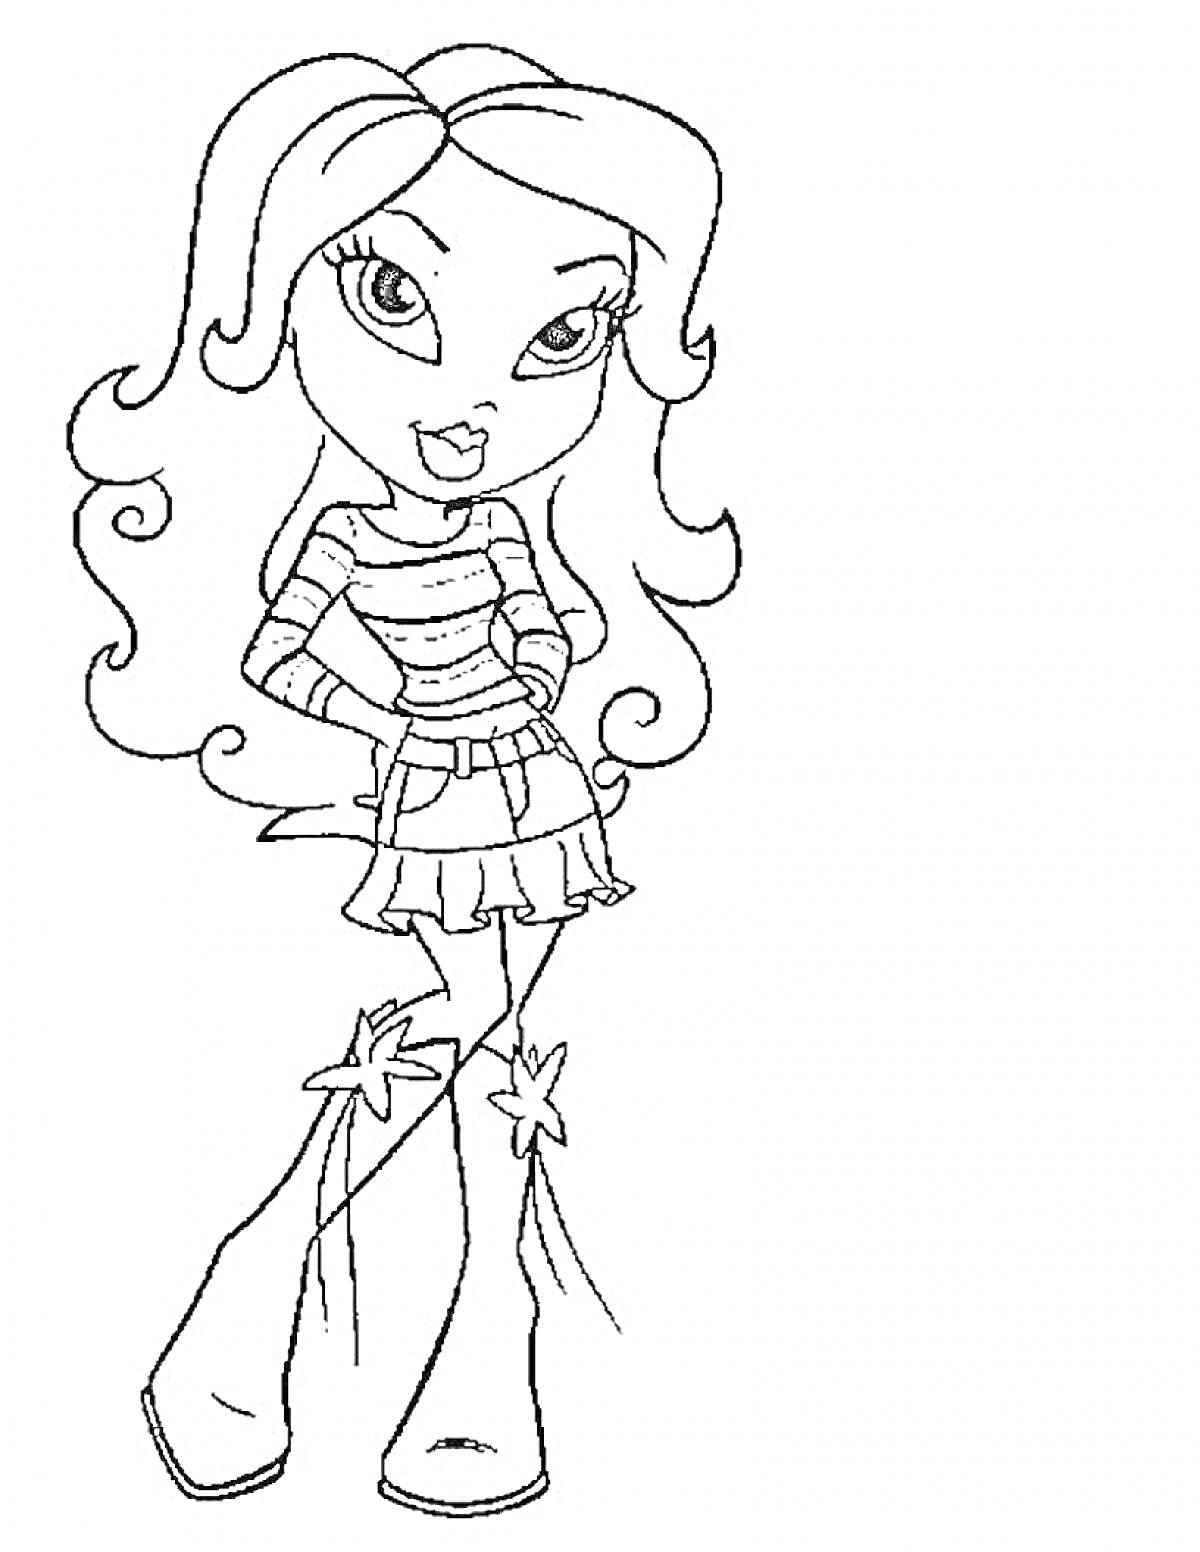 Раскраска Девочка Братц с длинными волосами в полосатом свитере и юбке, в сапогах на высоких каблуках